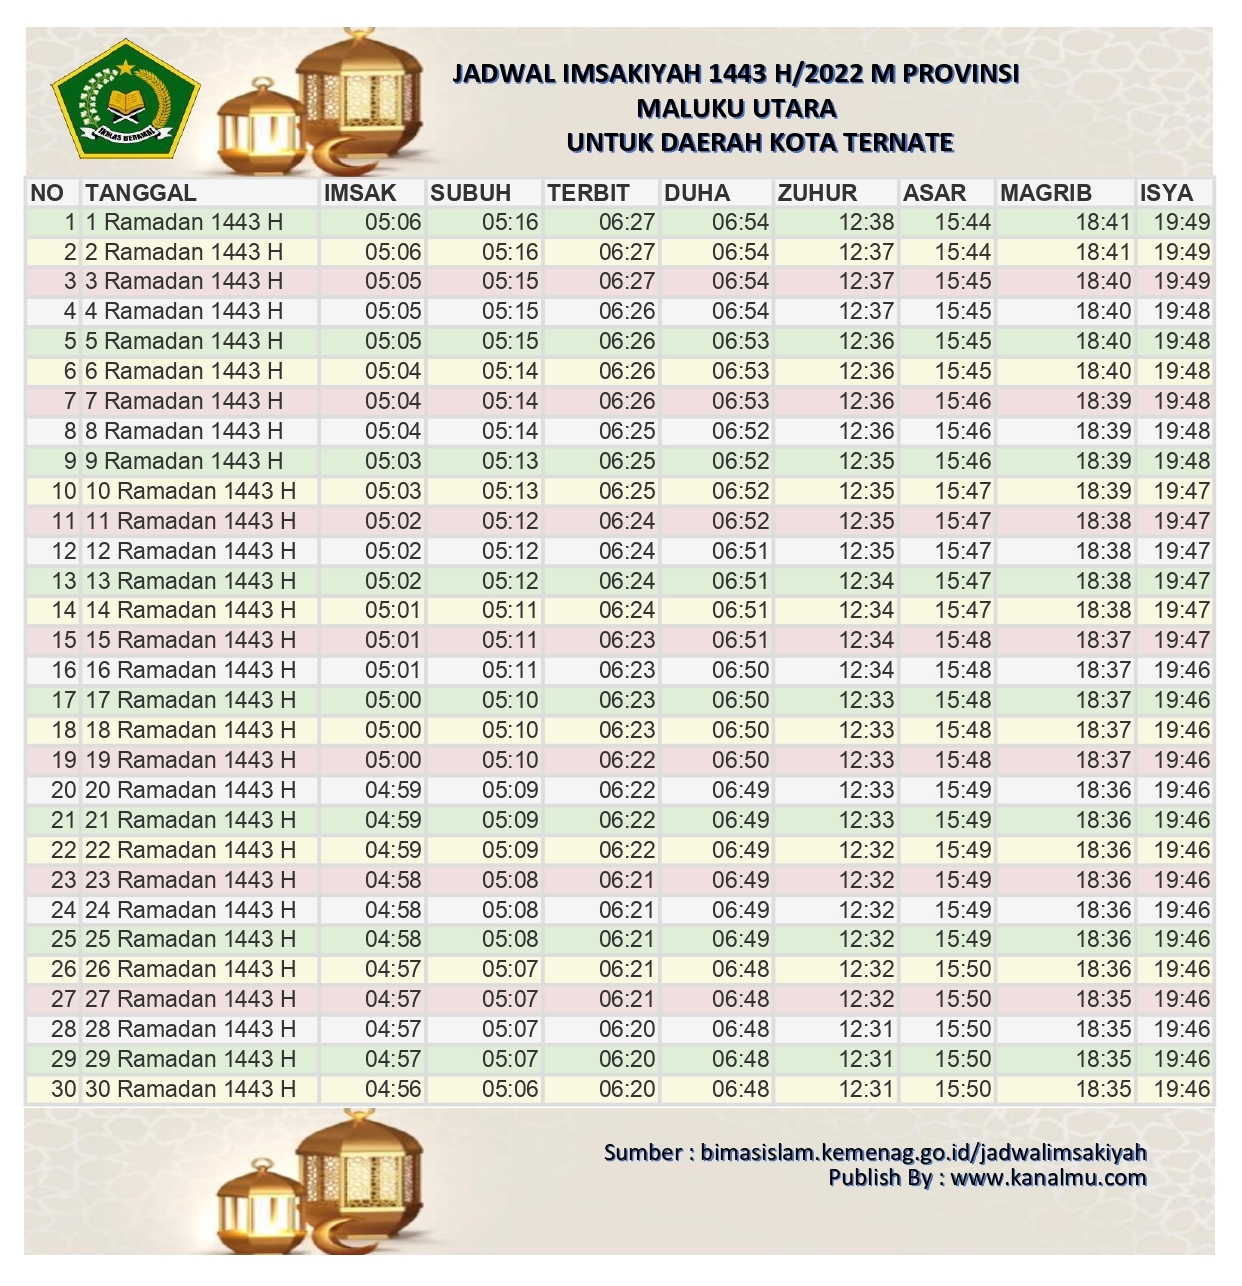 Jadwal Imsakiyah Ramadhan 2022 1443 h kota ternate - kanalmu